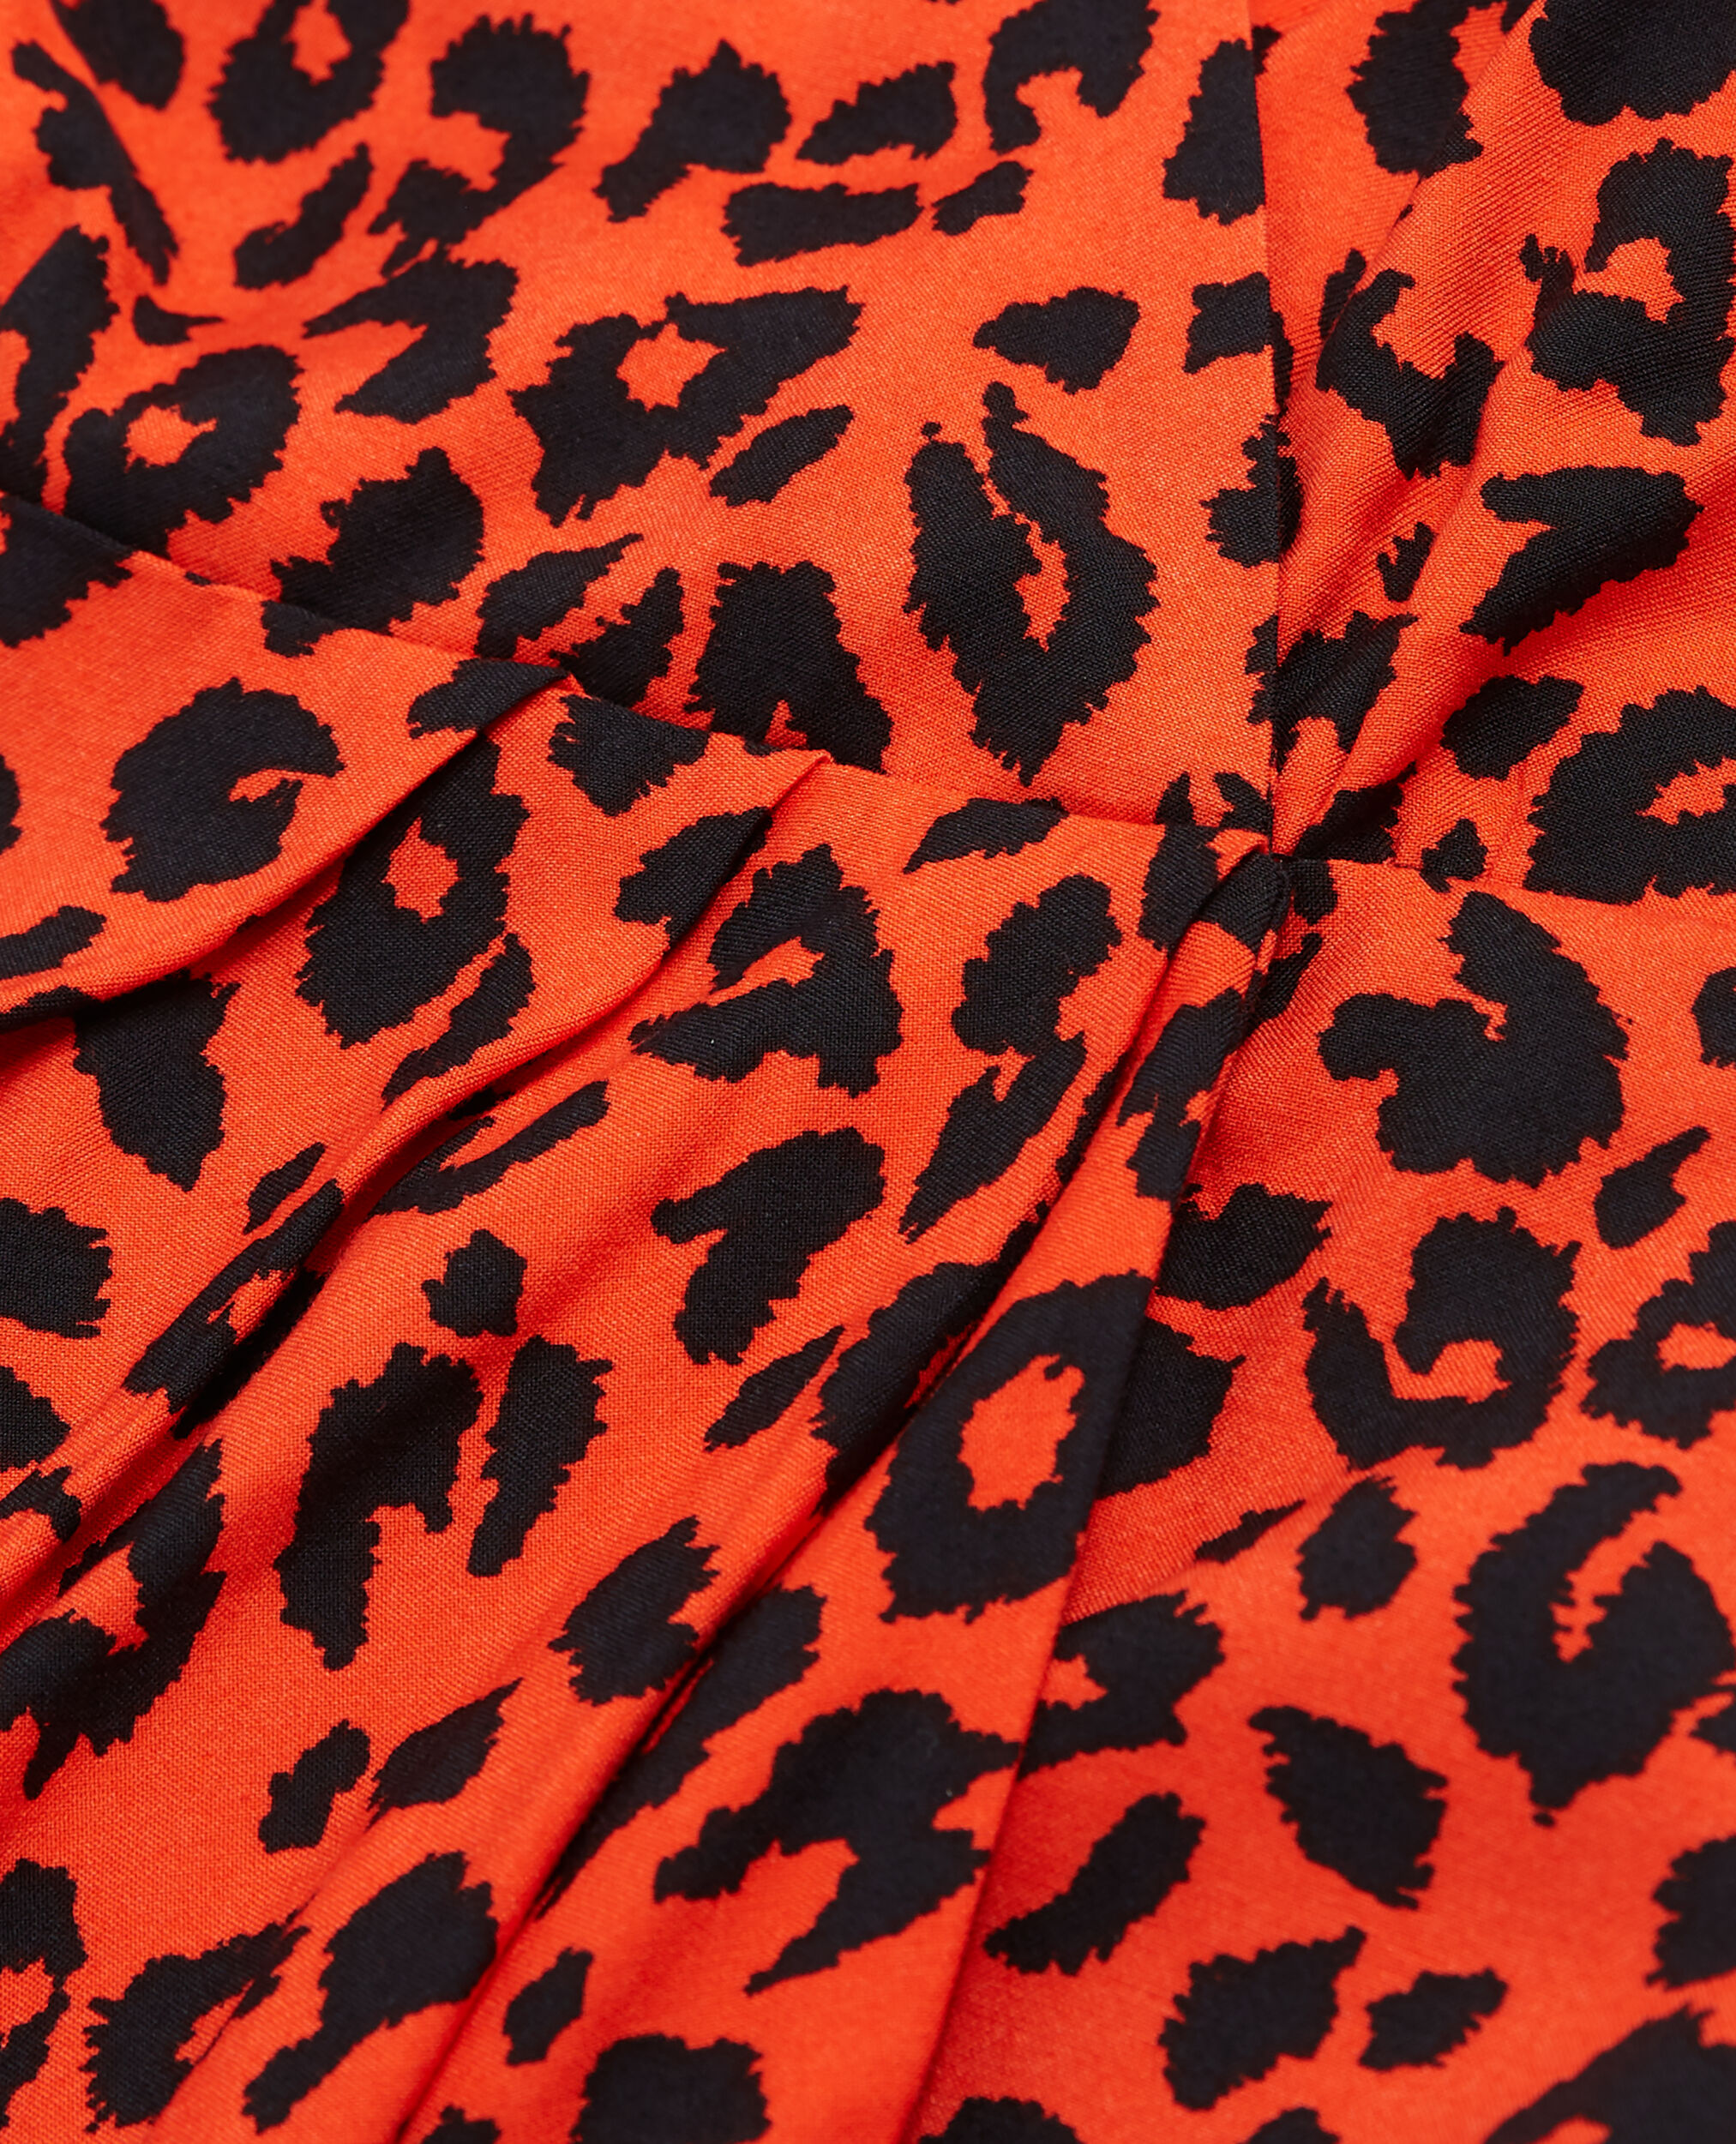 Robe courte léopard, ORANGE - BLACK, hi-res image number null